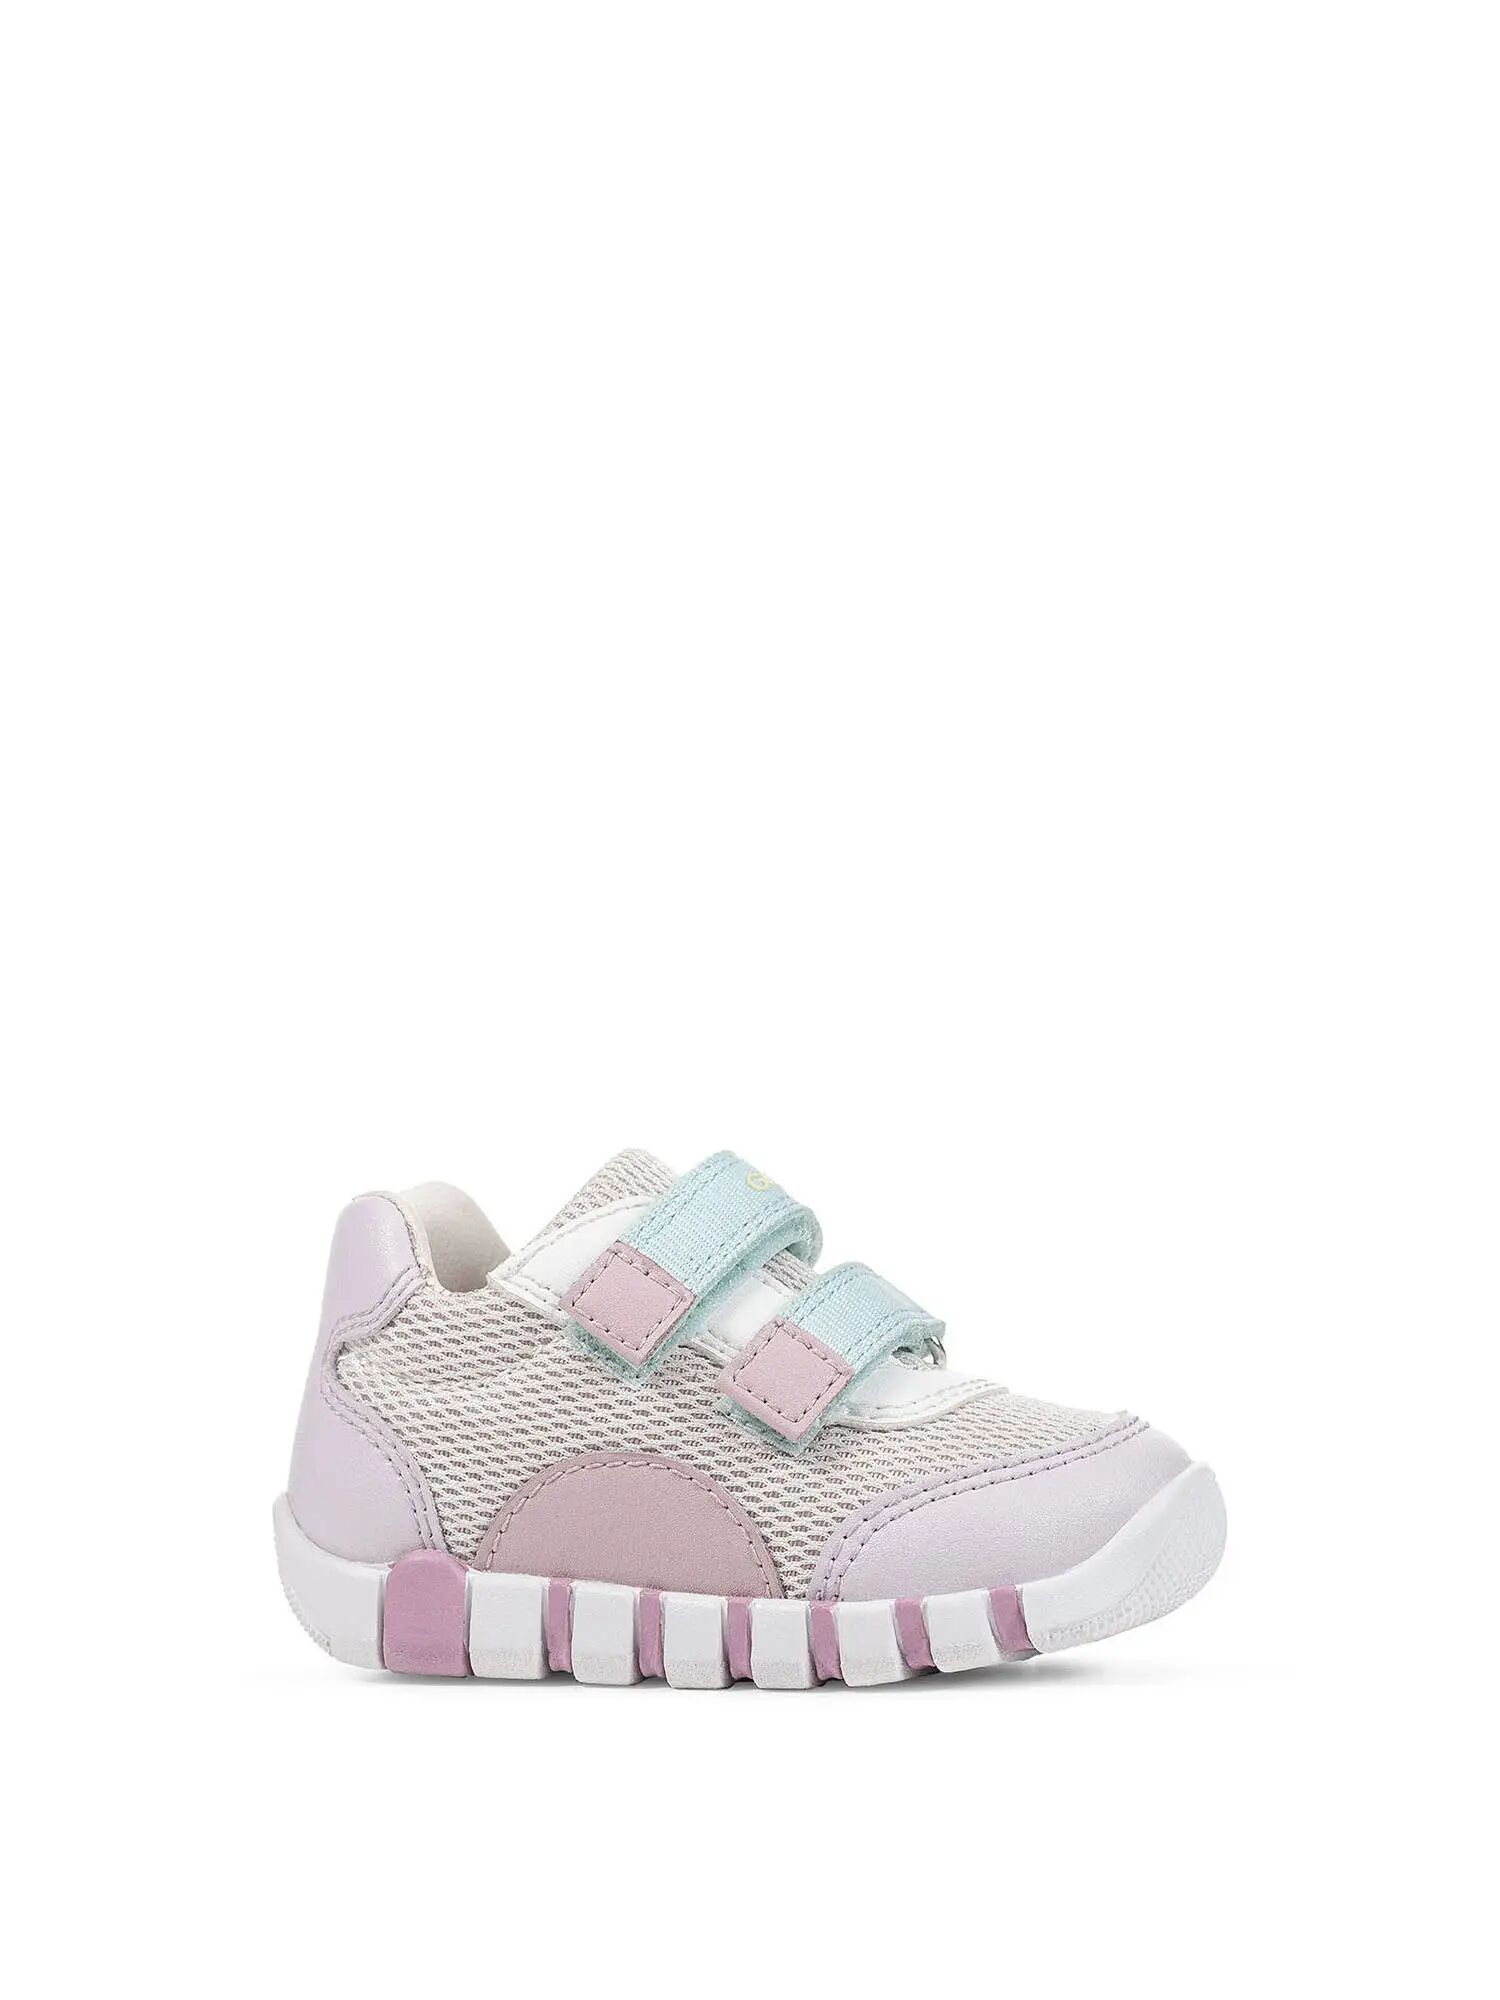 Geox Sneakers Bambina Colore Rosa/lilla ROSA/LILLA 20